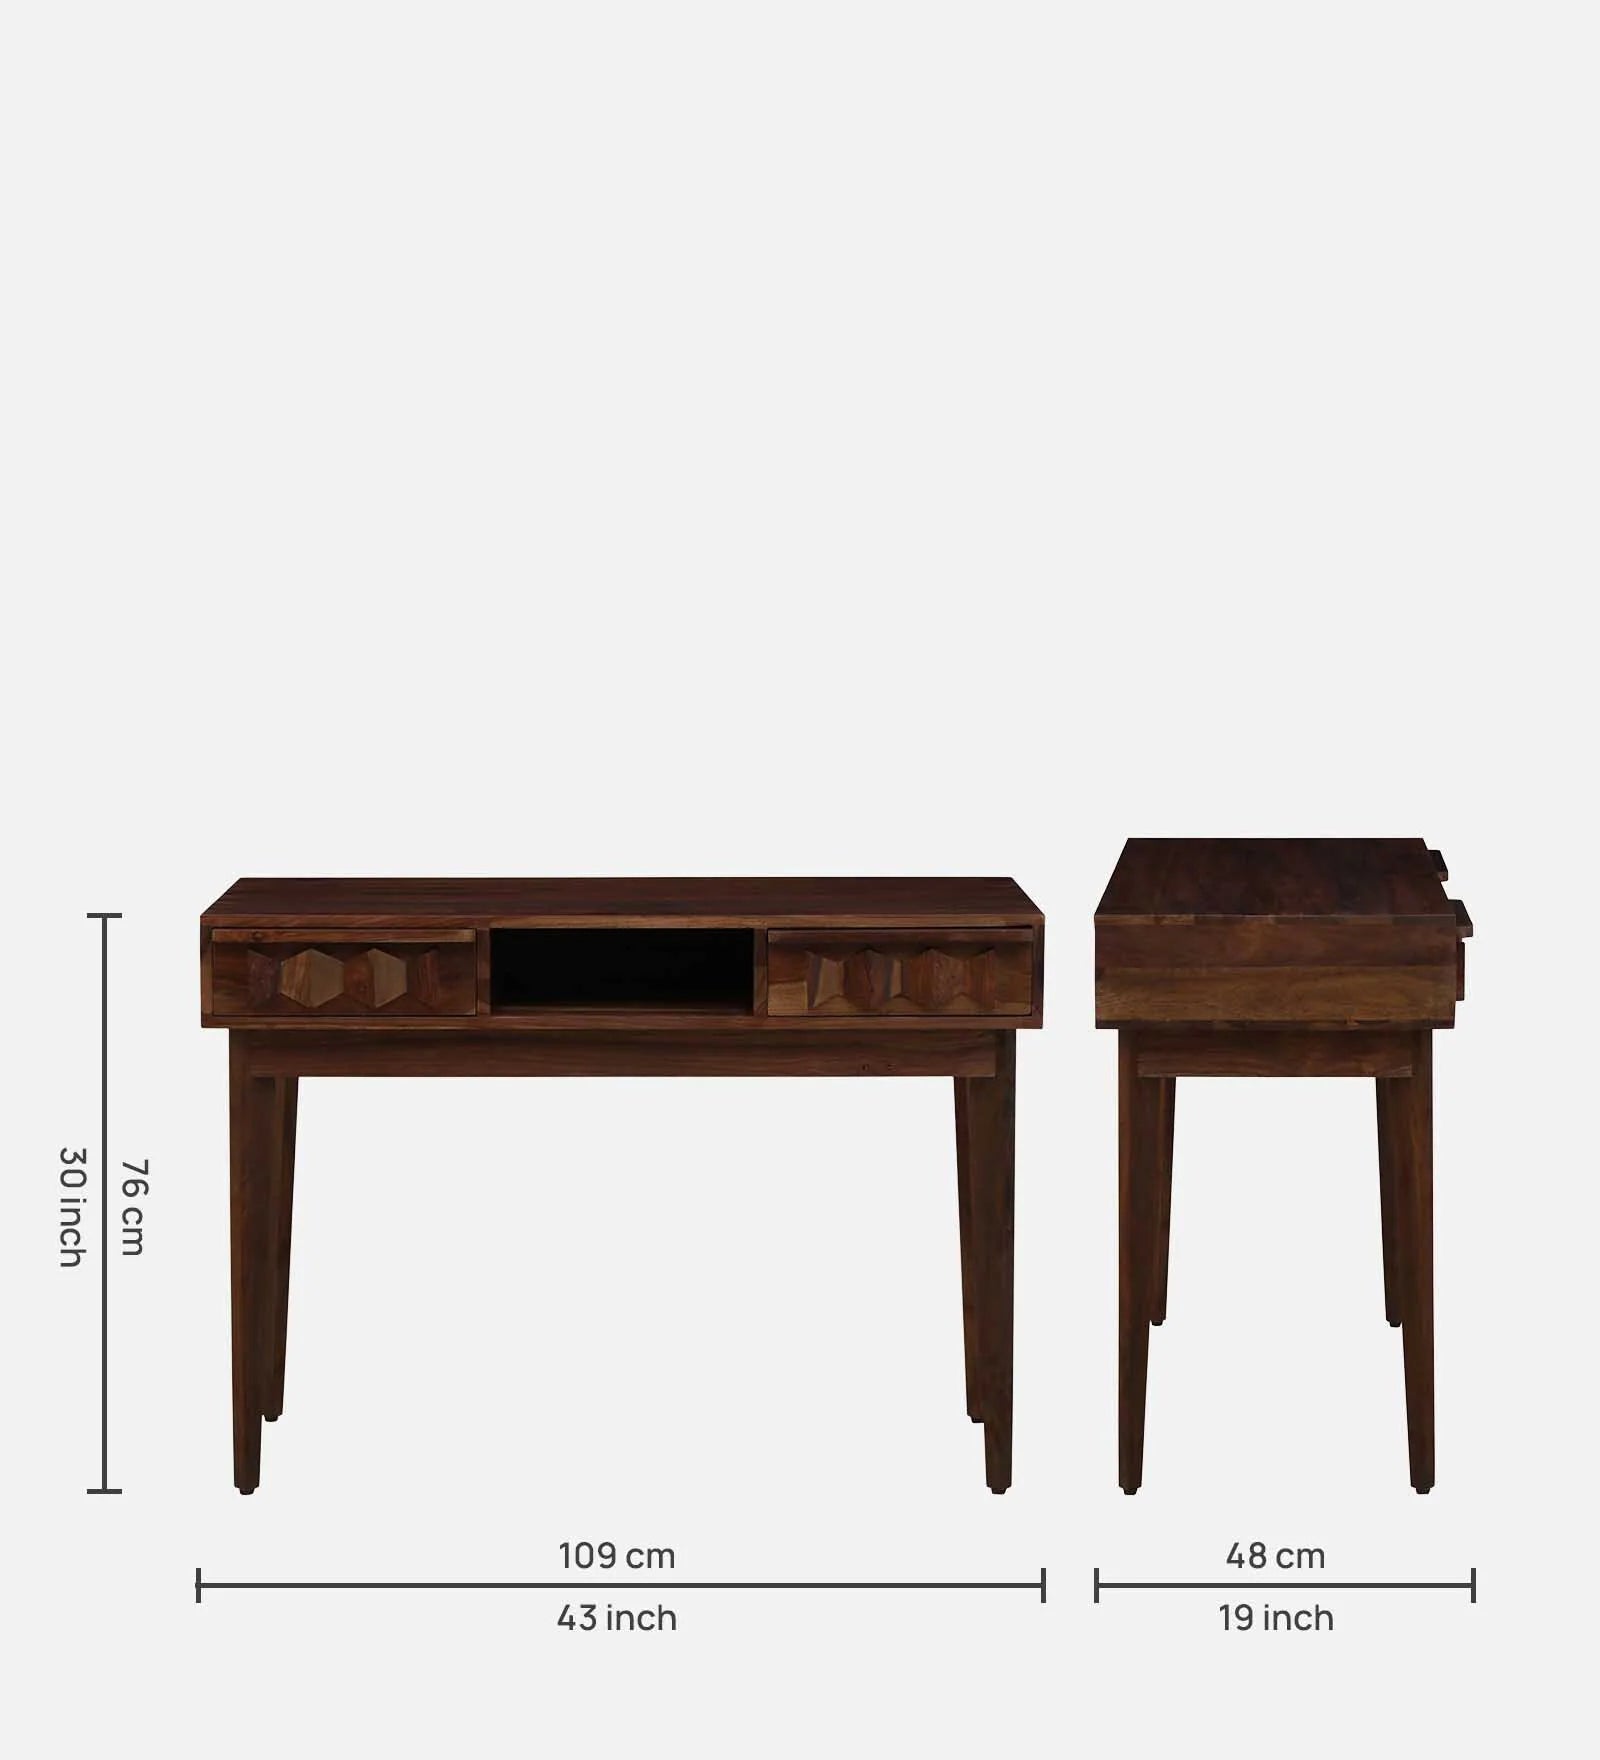 Alford Solid Wood Writing Table With 2 Drawer 1 Shelf in Provincial Teak Finish by Rajwada - Rajwada Furnish